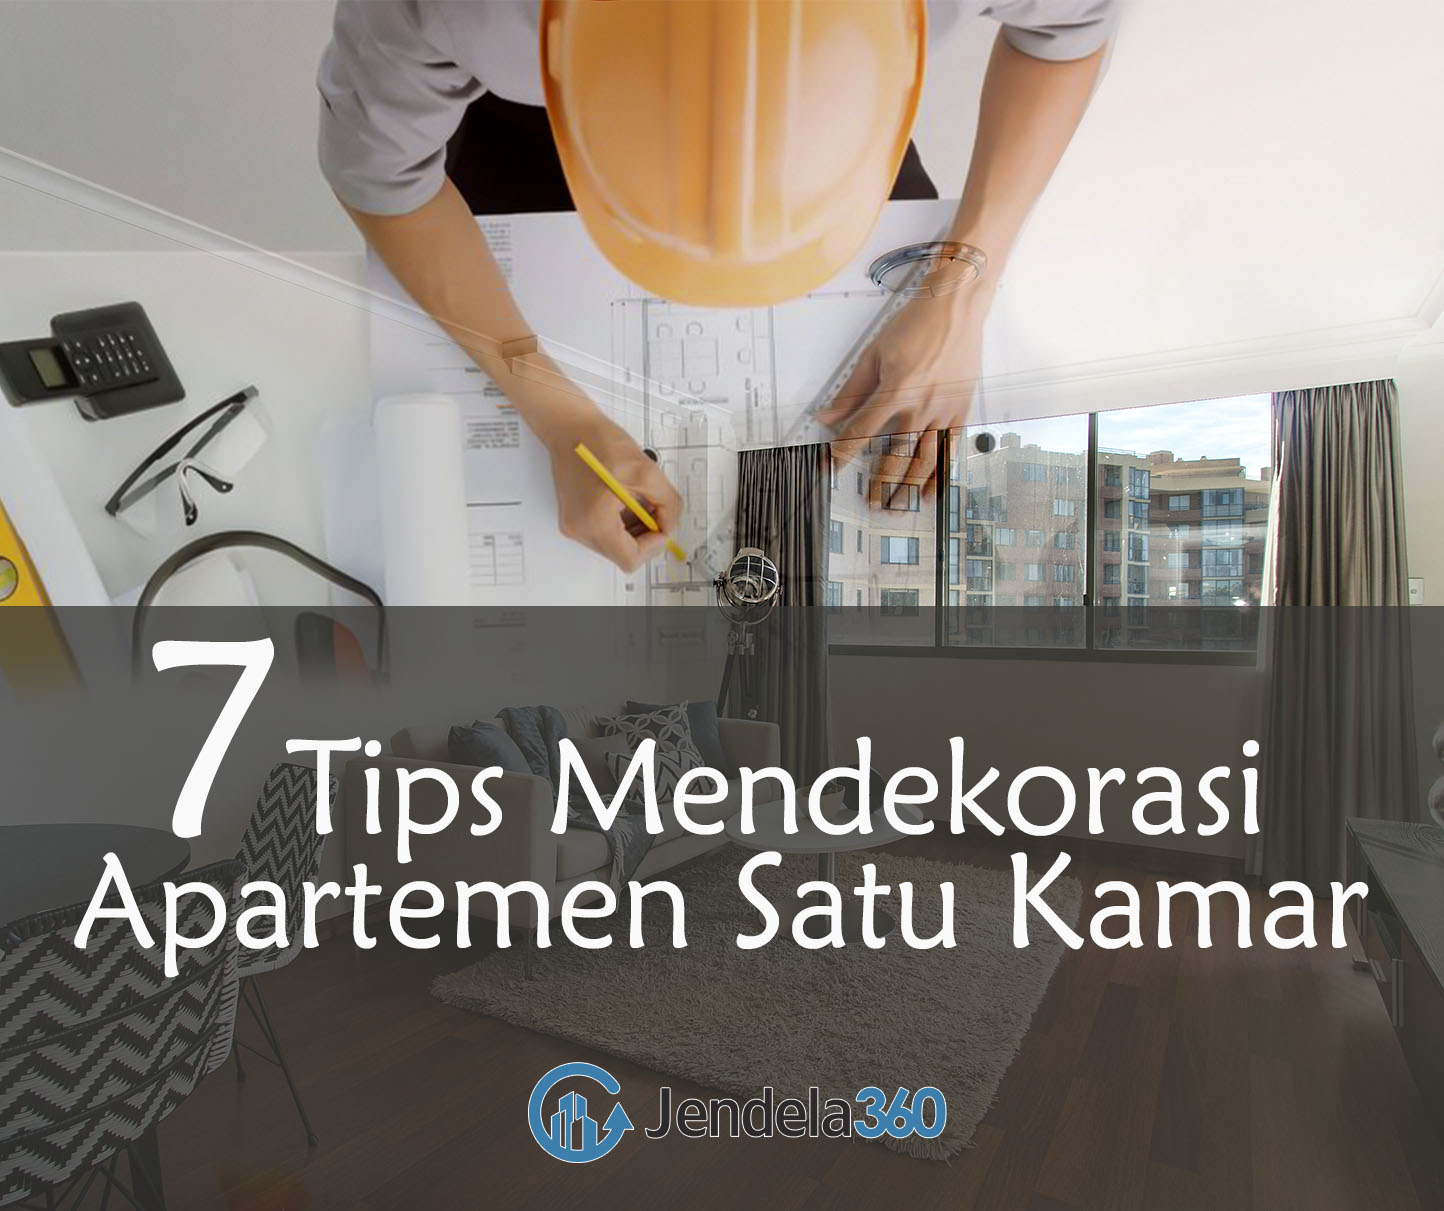 7 Tips Mendekorasi Apartemen Satu Kamar